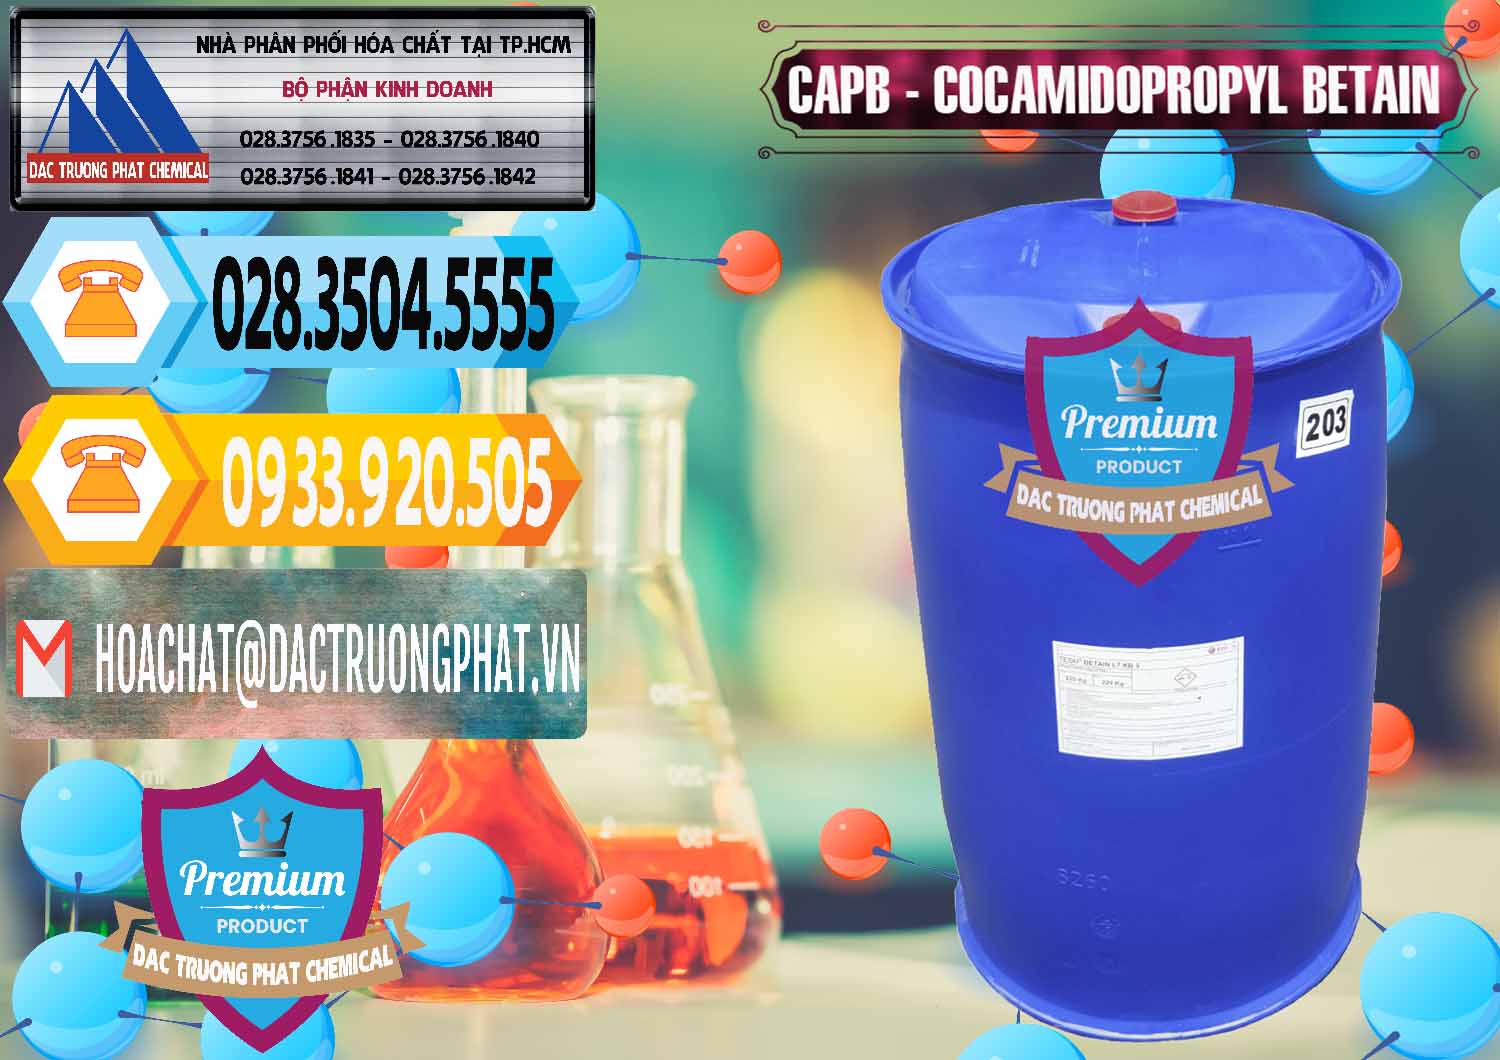 Nhà nhập khẩu và bán Cocamidopropyl Betaine - CAPB Tego Indonesia - 0327 - Nơi chuyên cung cấp _ nhập khẩu hóa chất tại TP.HCM - hoachattayrua.net